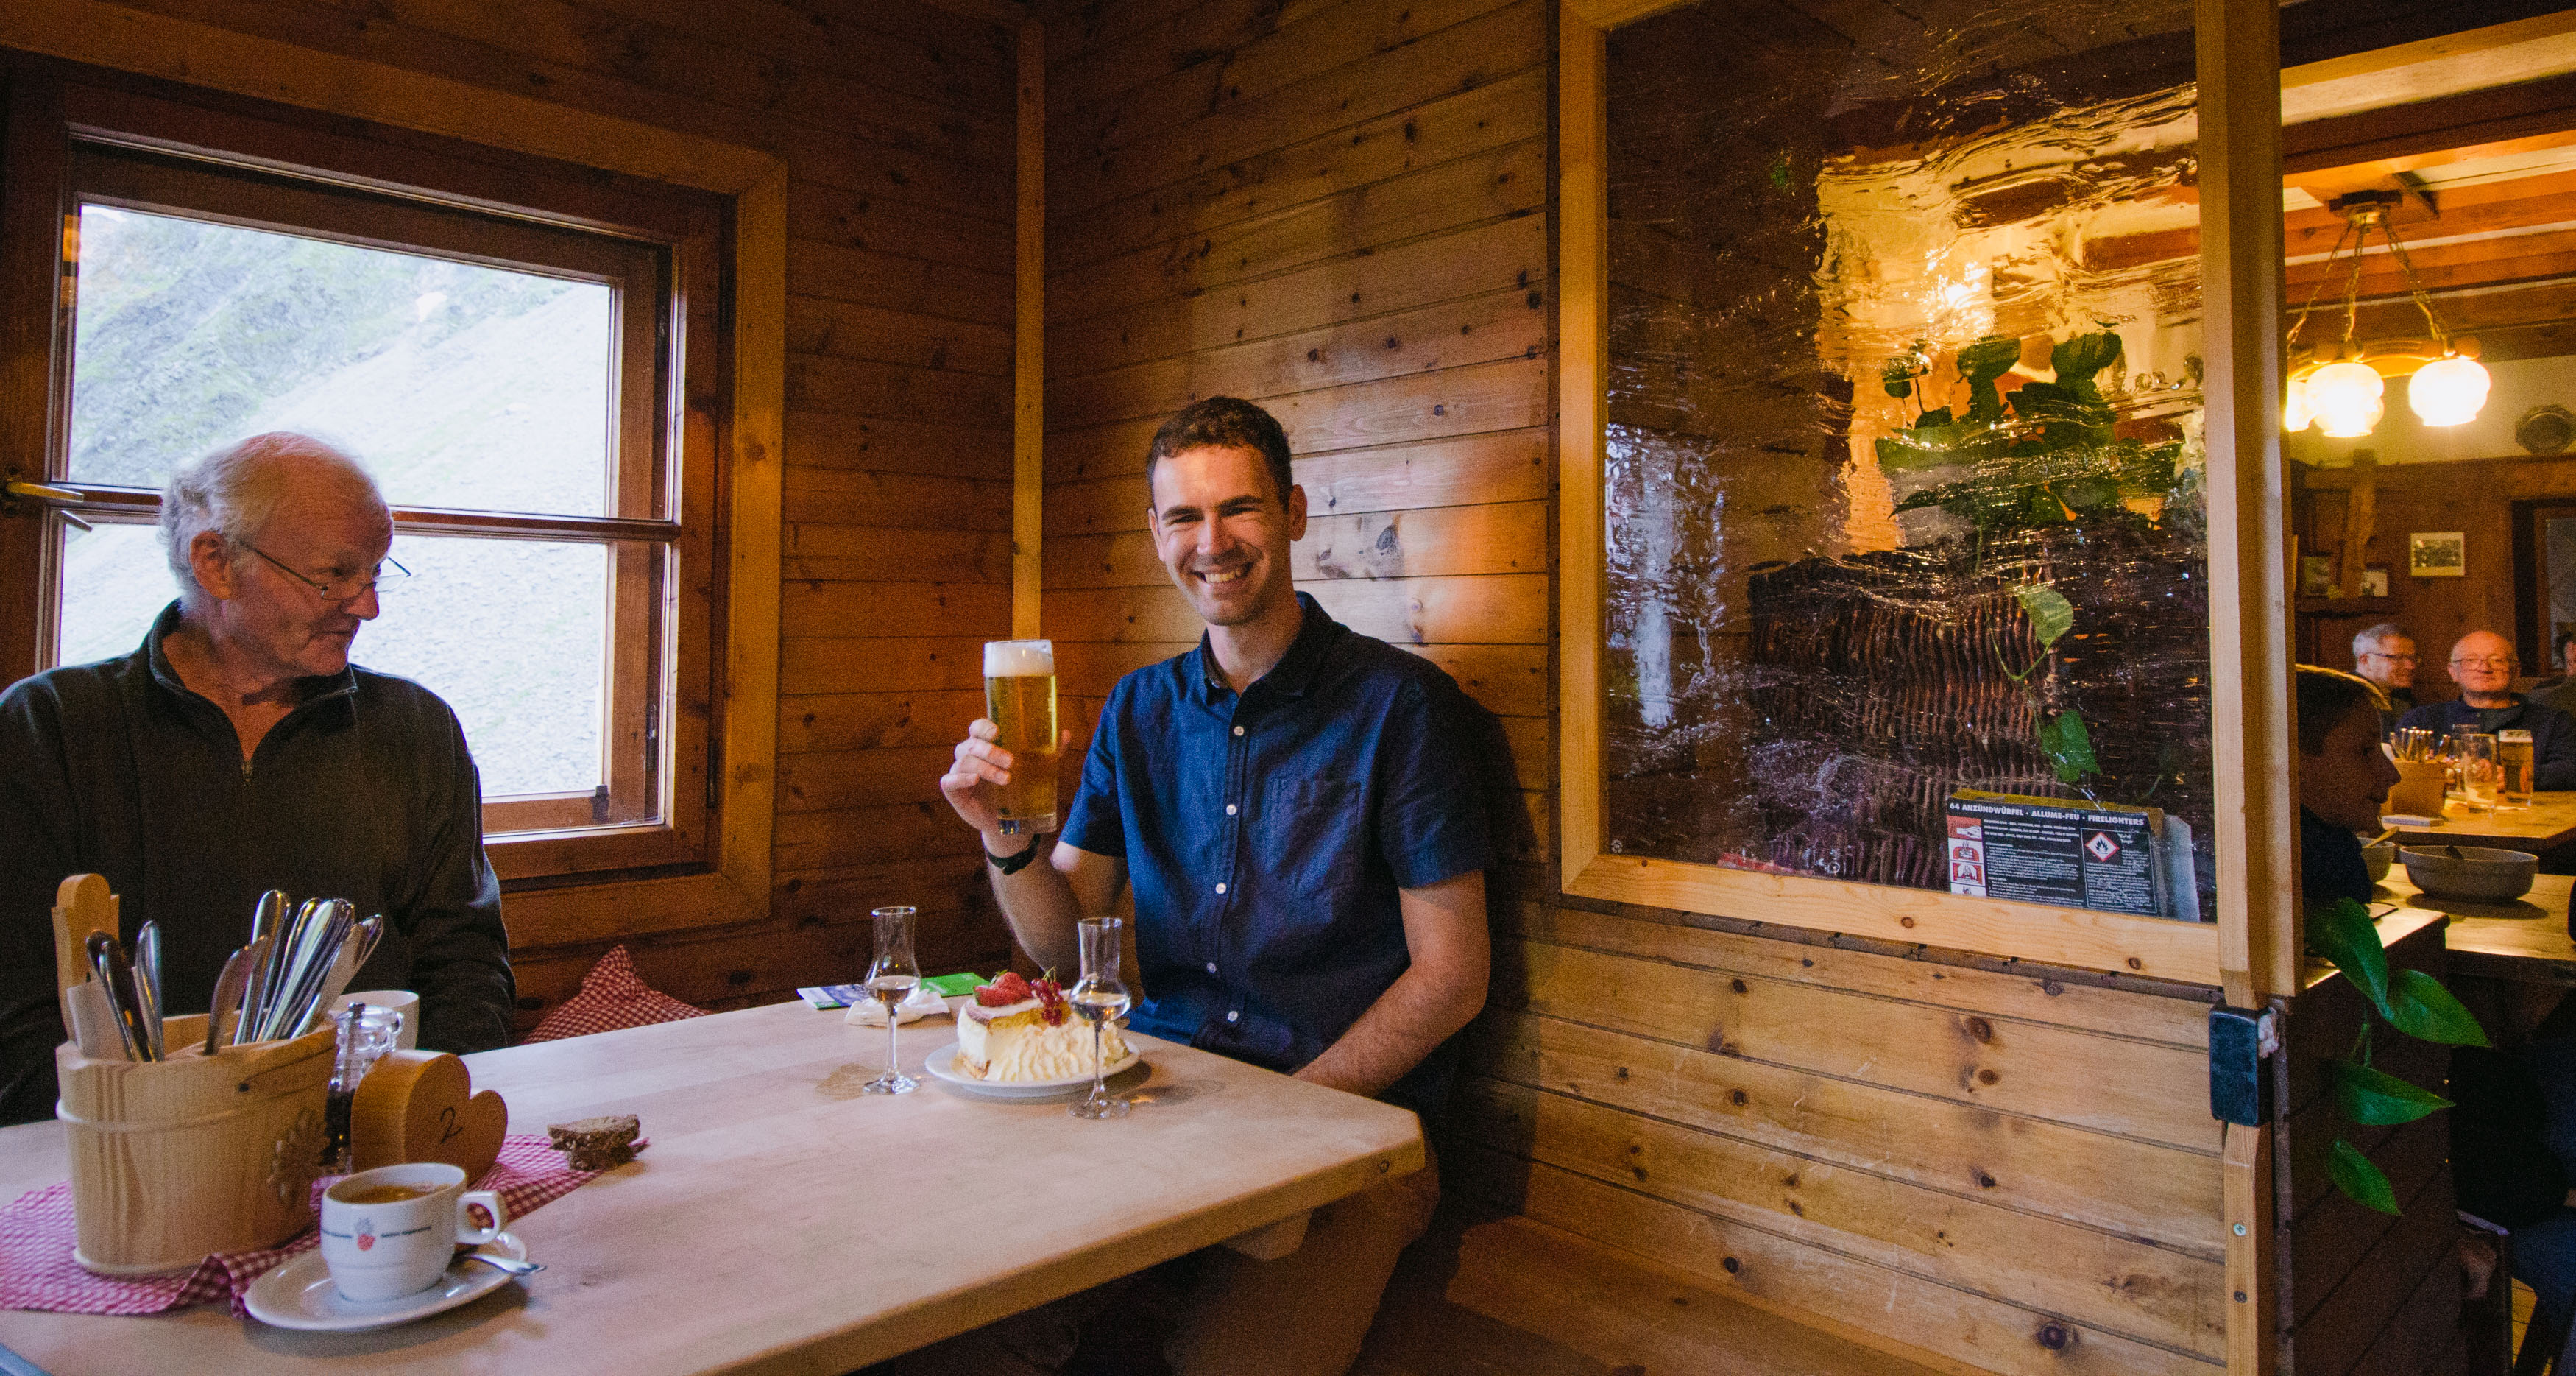 Enjoying the spoils of hut life: dining at Neue Regensburger hut